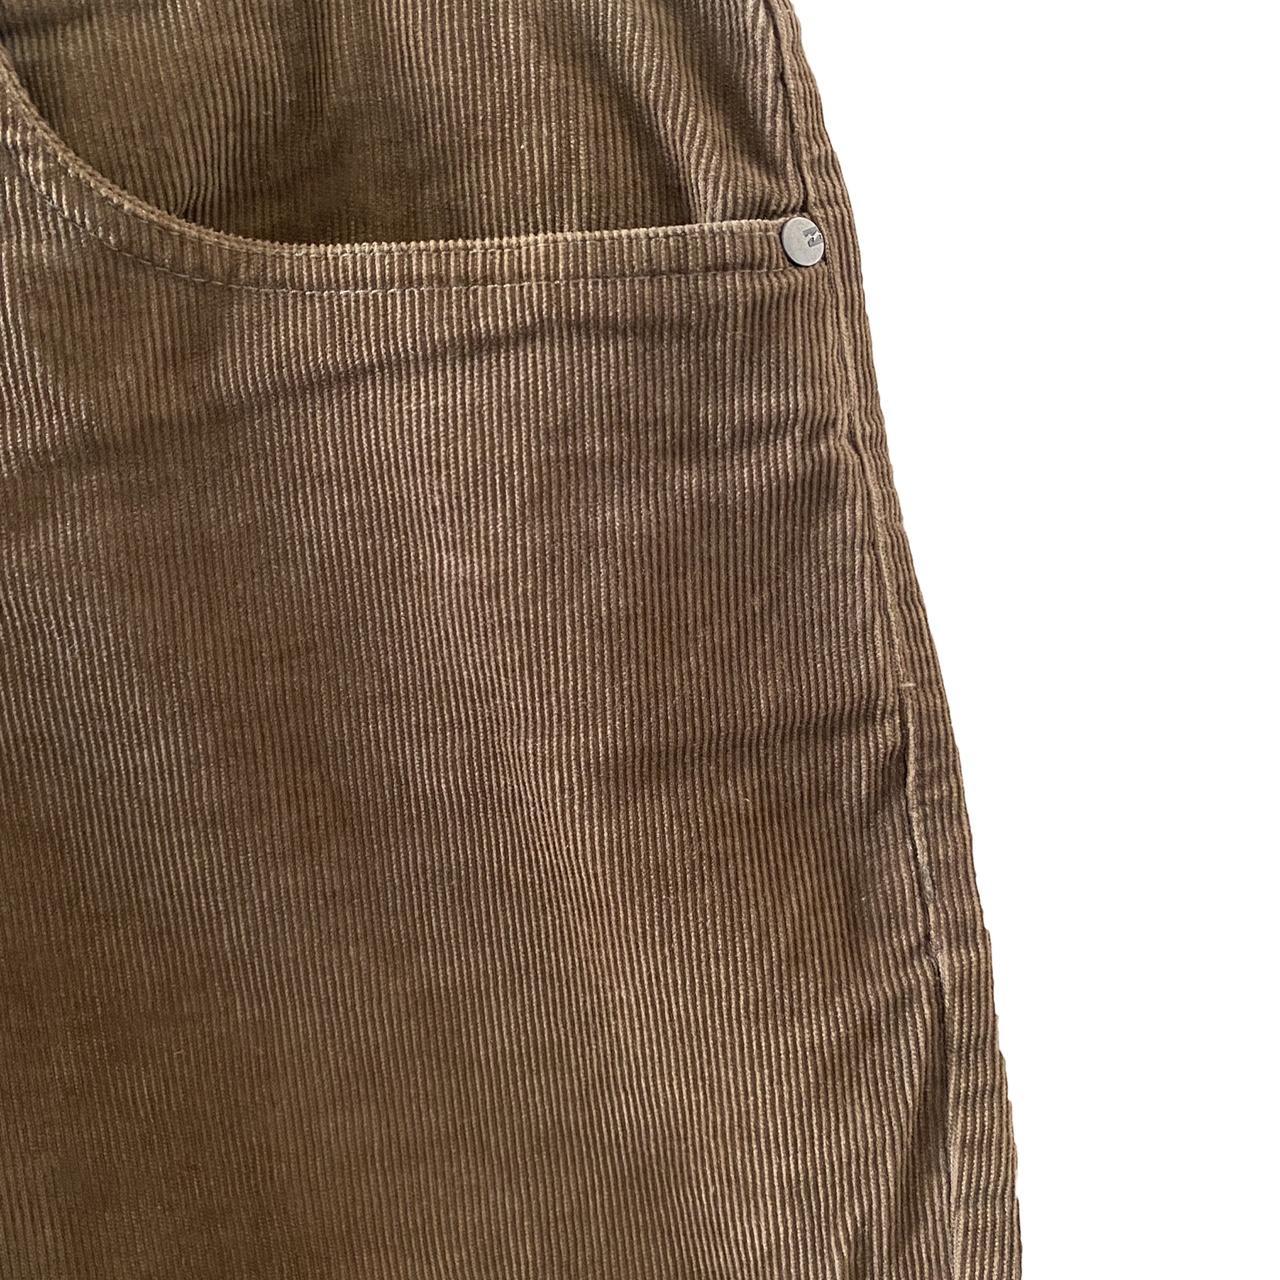 Billabong Men's Brown Shorts (2)